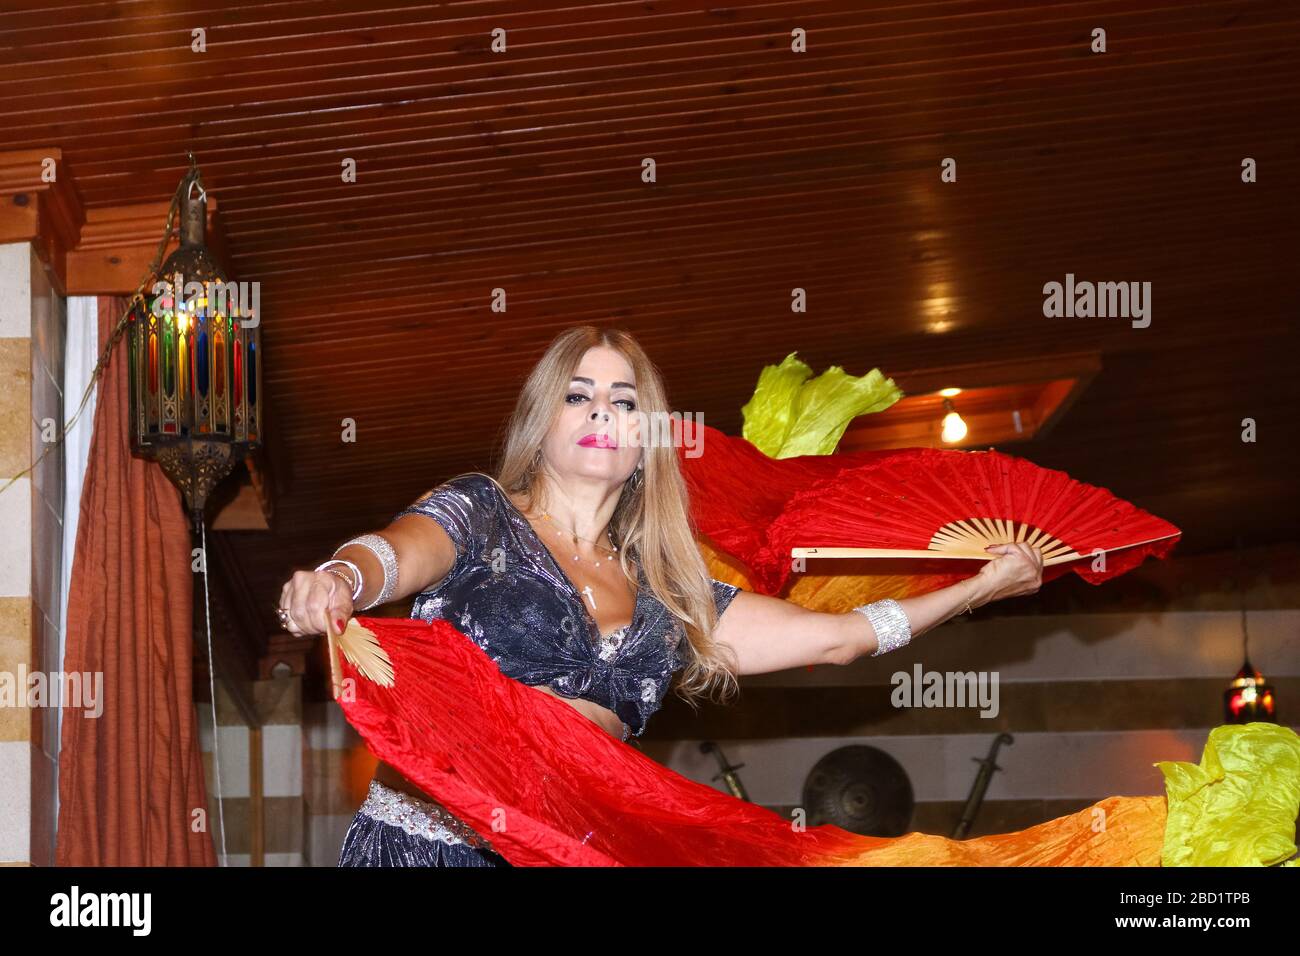 Beyrouth, Liban - 30 mai 2017 : femme mûre gracieuse d'origine libanaise, qui danse du ventre traditionnelle à l'aide d'un voile coloré à l'intérieur. Banque D'Images